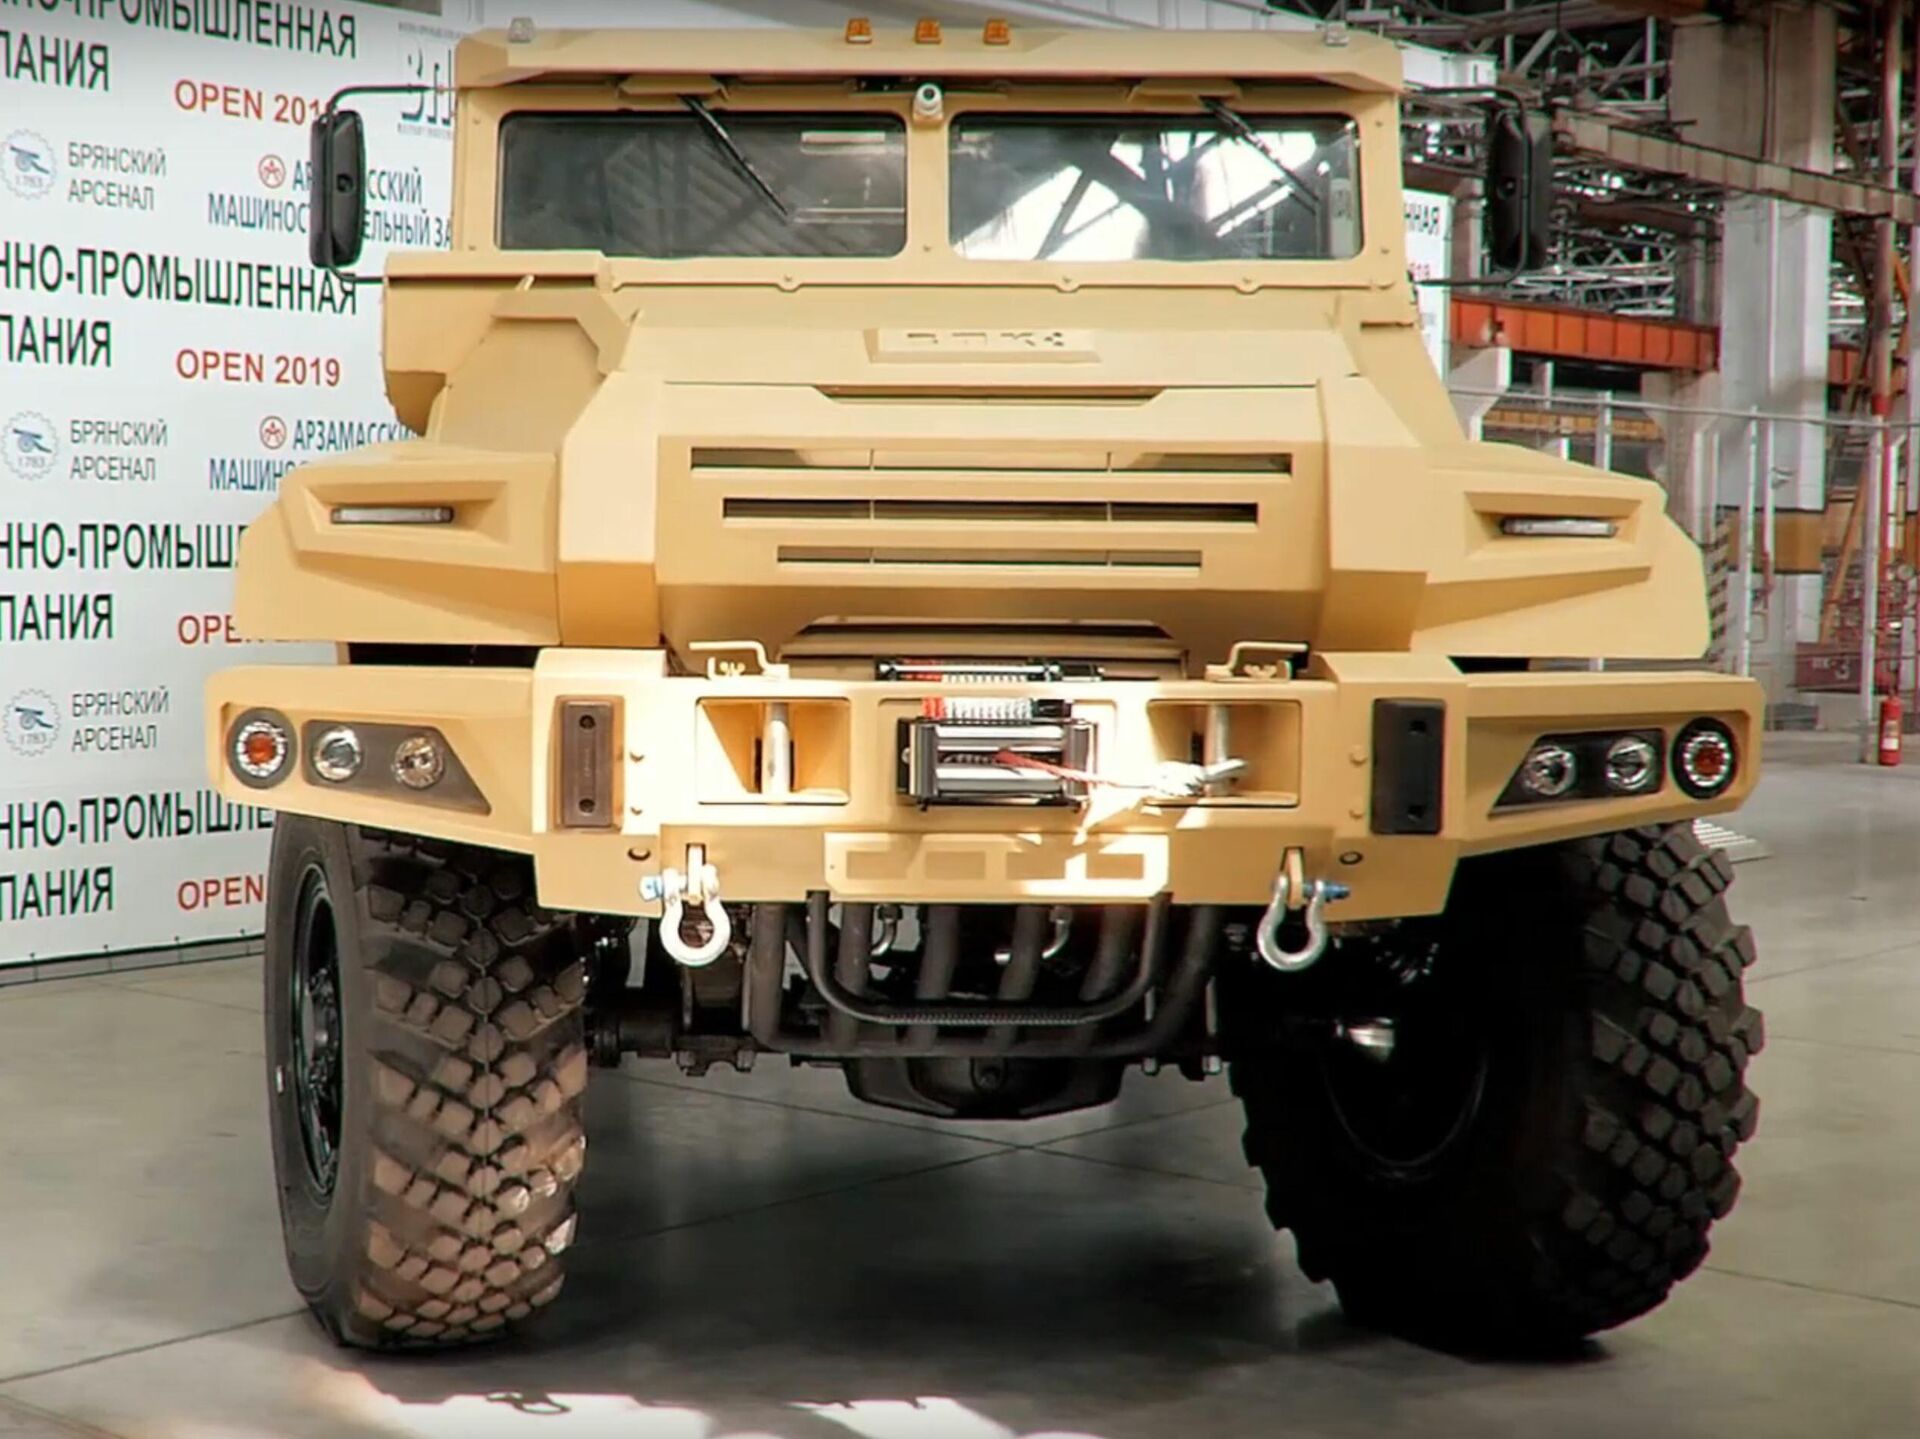 cuero como el desayuno subterraneo Video: muestran la versión 'pick-up' del camión blindado VPK-Ural -  09.11.2021, Sputnik Mundo